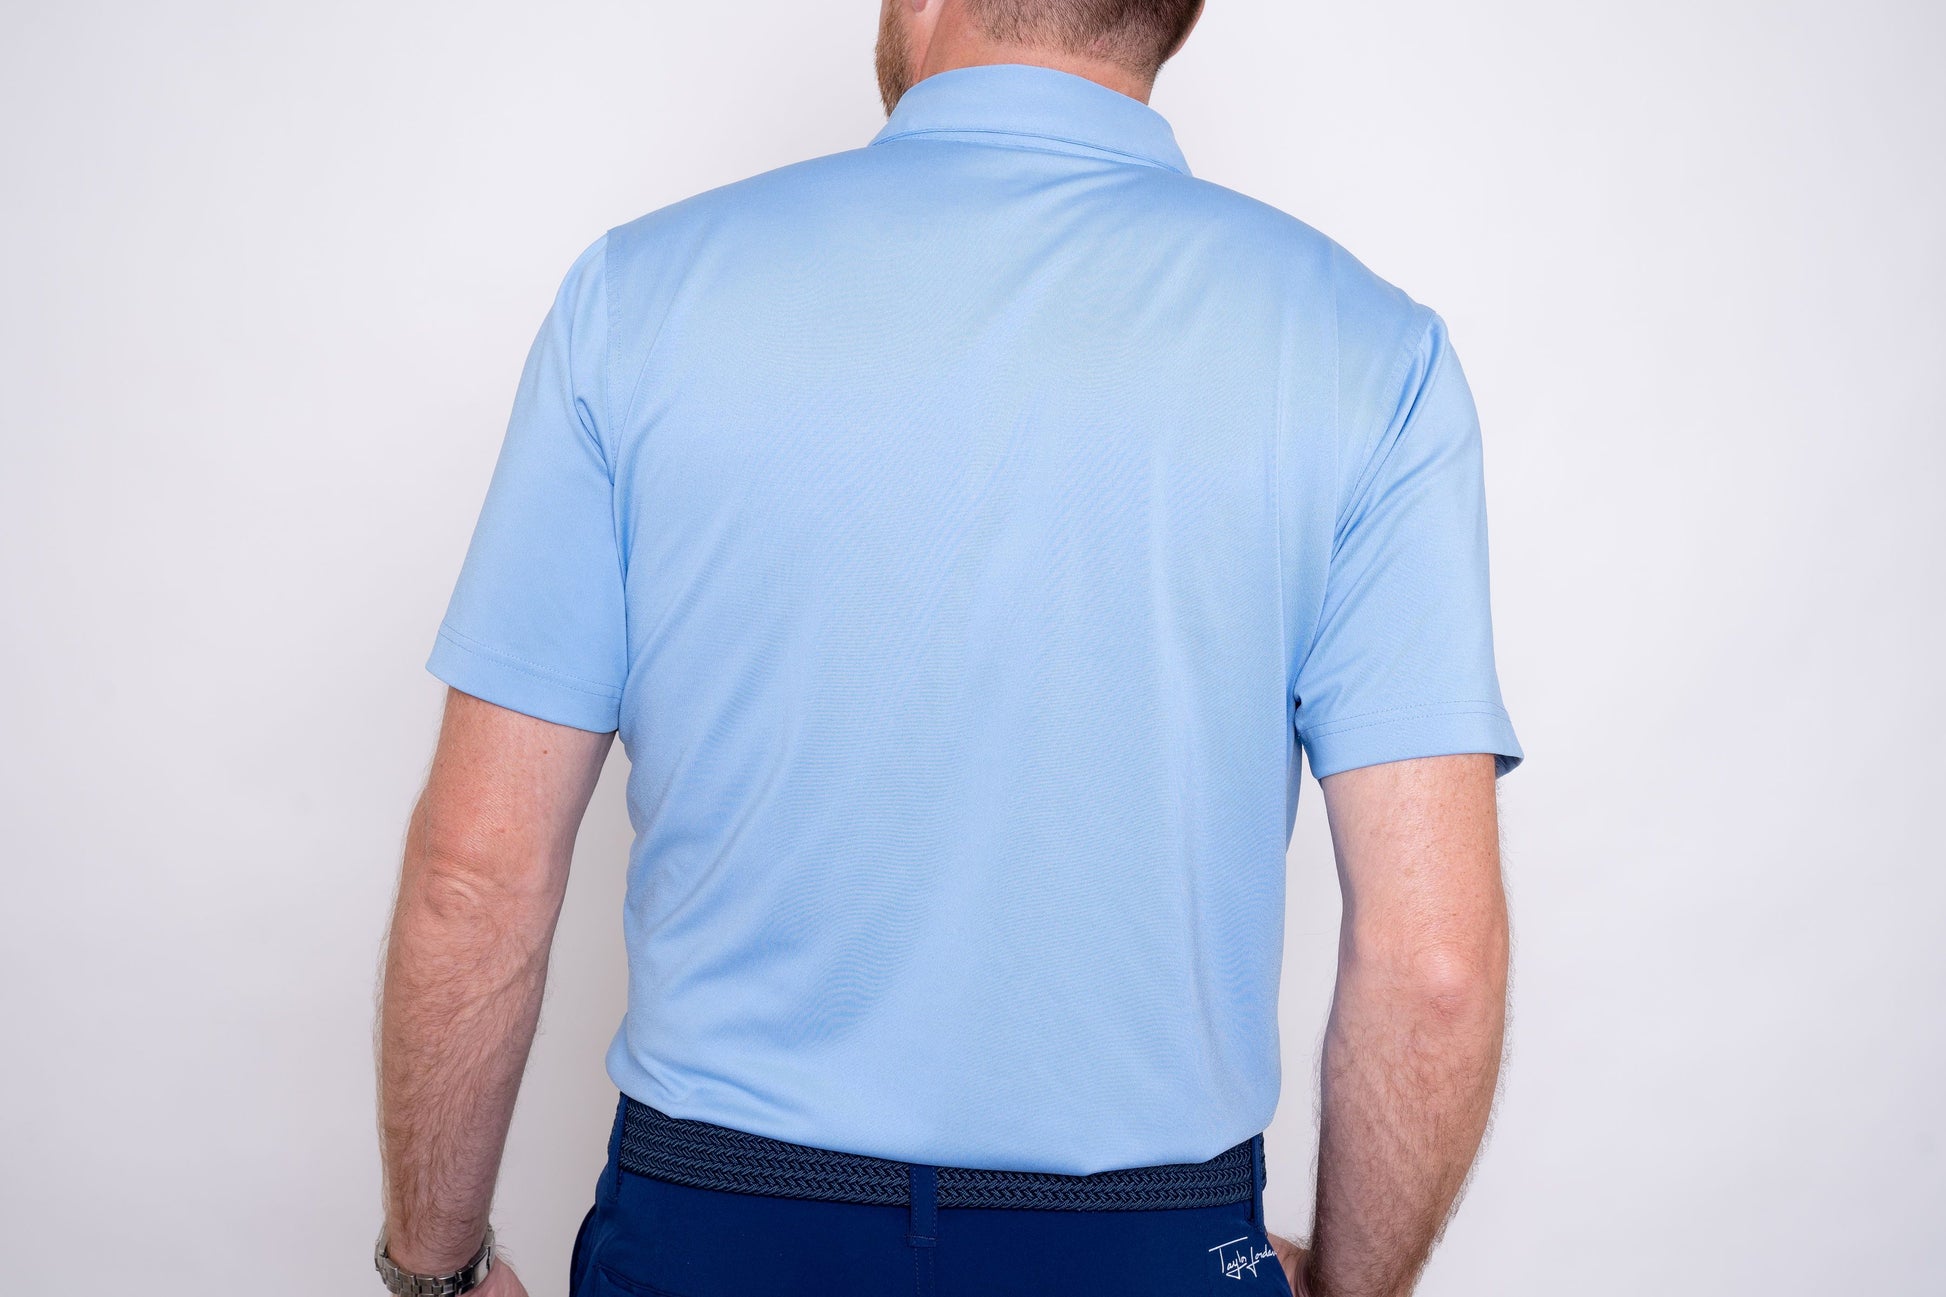 Player's Golf Shirt - Carolina Blue Hibiscus Men's Golf Shirt Taylor Jordan Apparel 